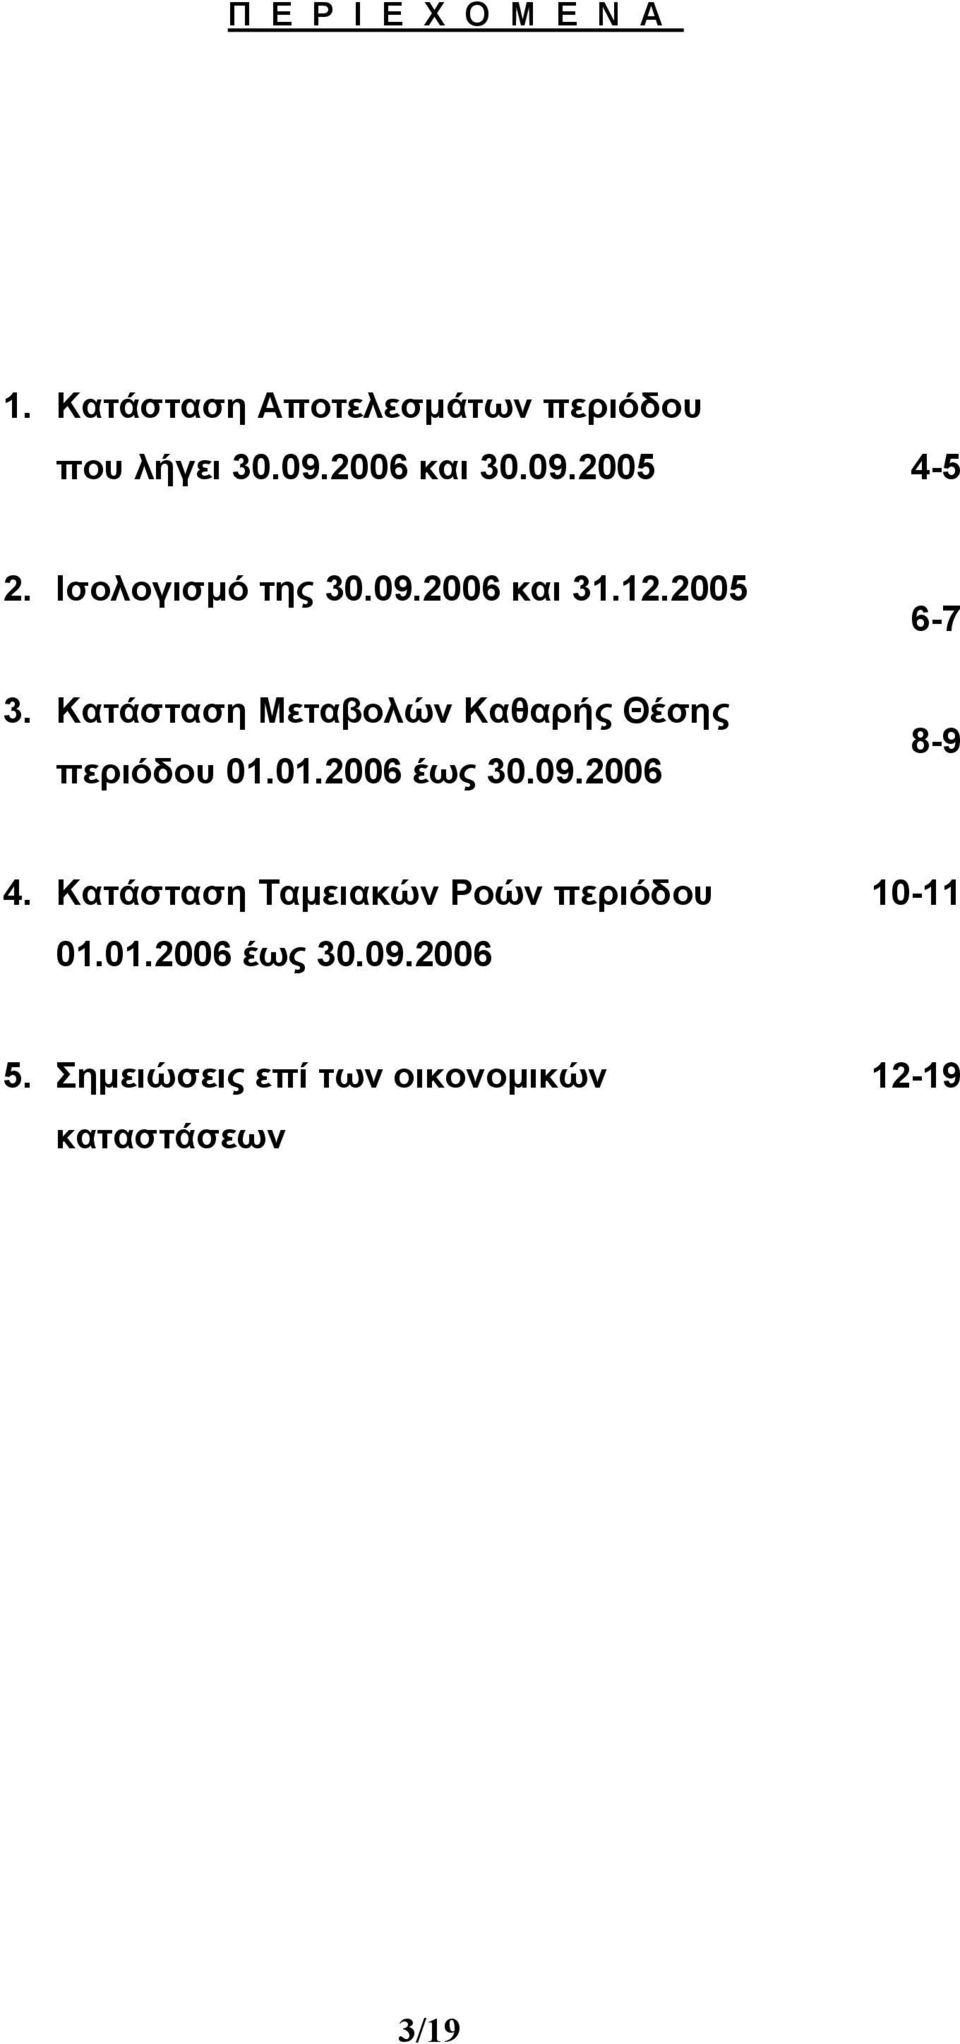 Κατάσταση Μεταβολών Καθαρής Θέσης περιόδου 01.01.2006 έως 30.09.2006 6-7 8-9 4.